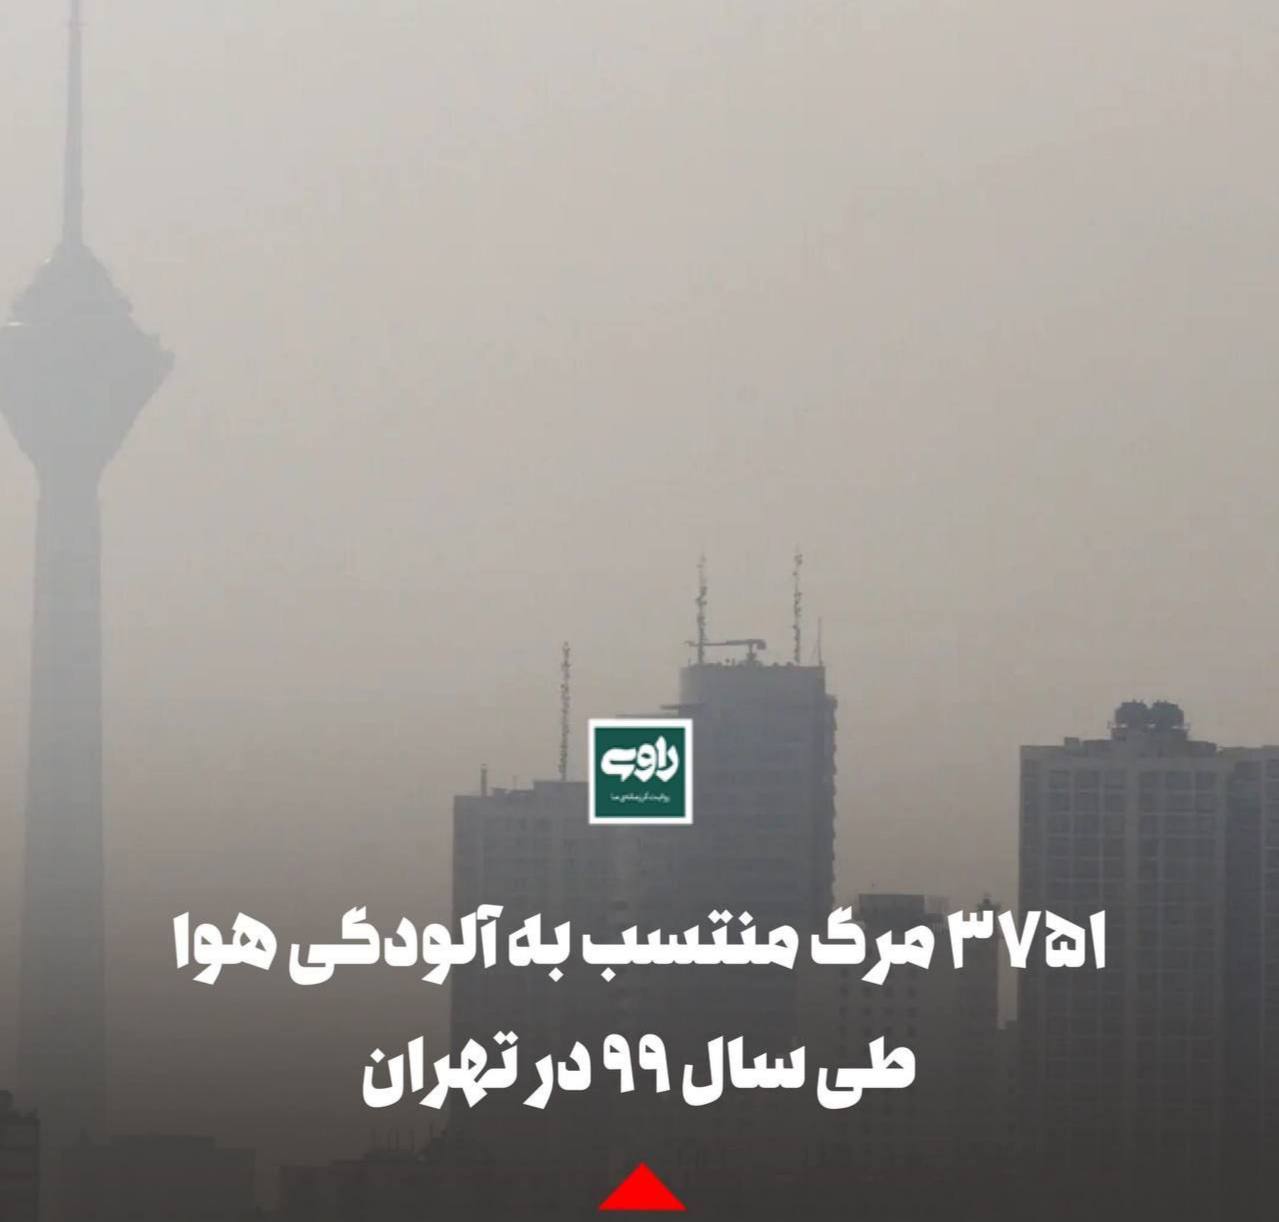 ۳۷۵۱ مرگ منتسب به آلودگی هوا طی سال ۹۹ در تهران